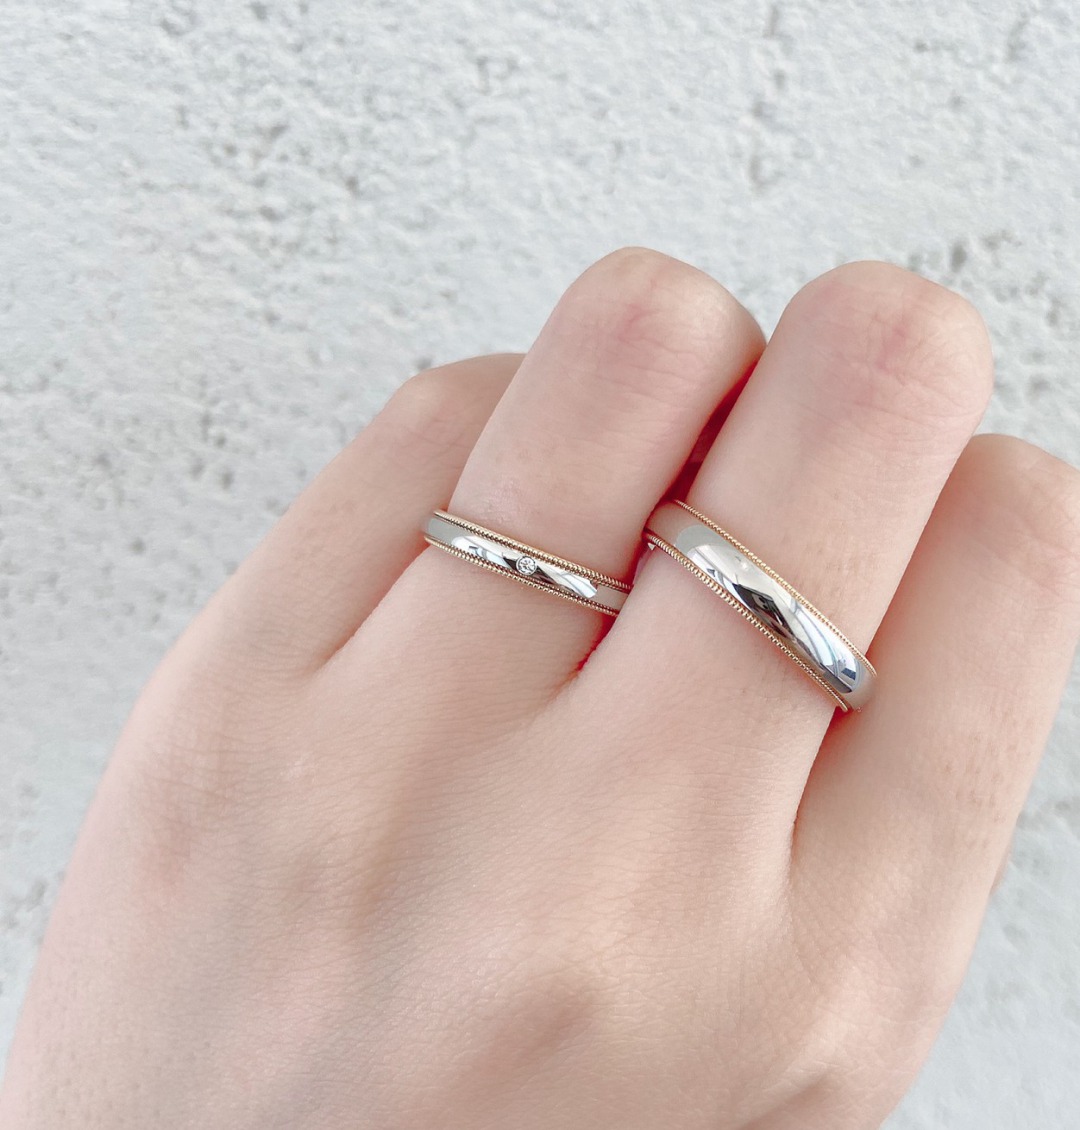 銀座BRIDGEで見つけるアンティーク調ミルグレインの可愛い婚約指輪、結婚指輪